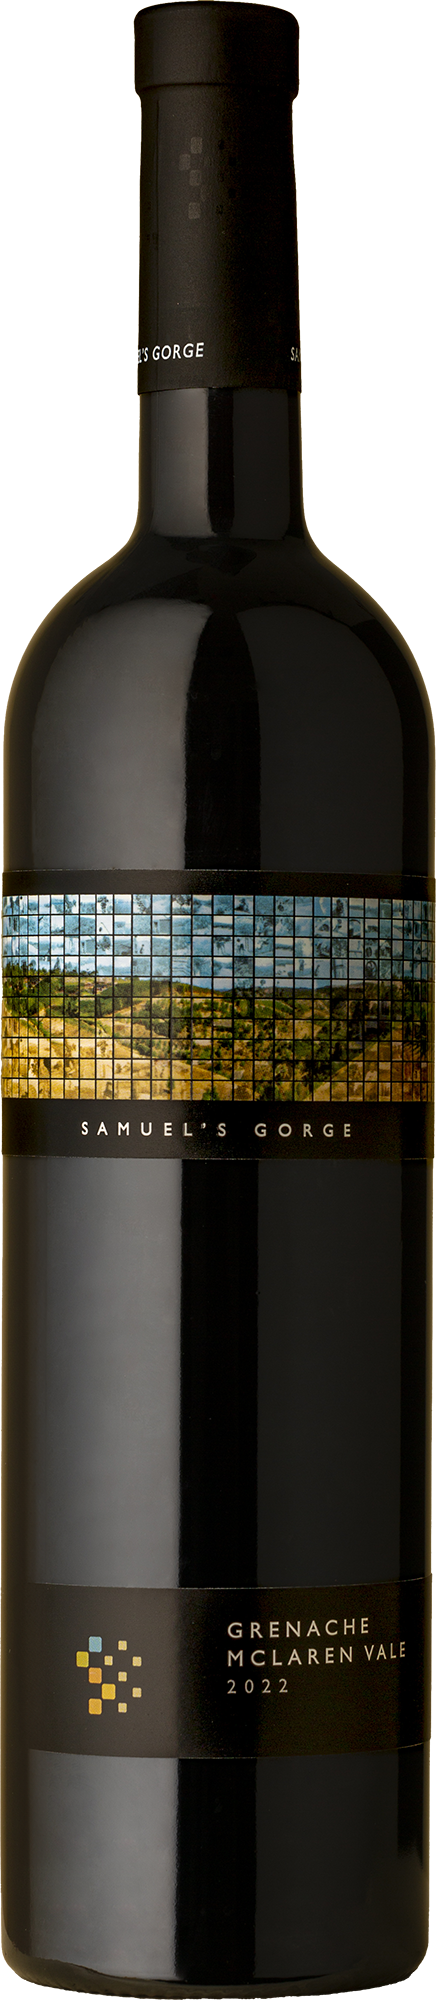 Samuel's Gorge - Grenache 2022 Red Wine